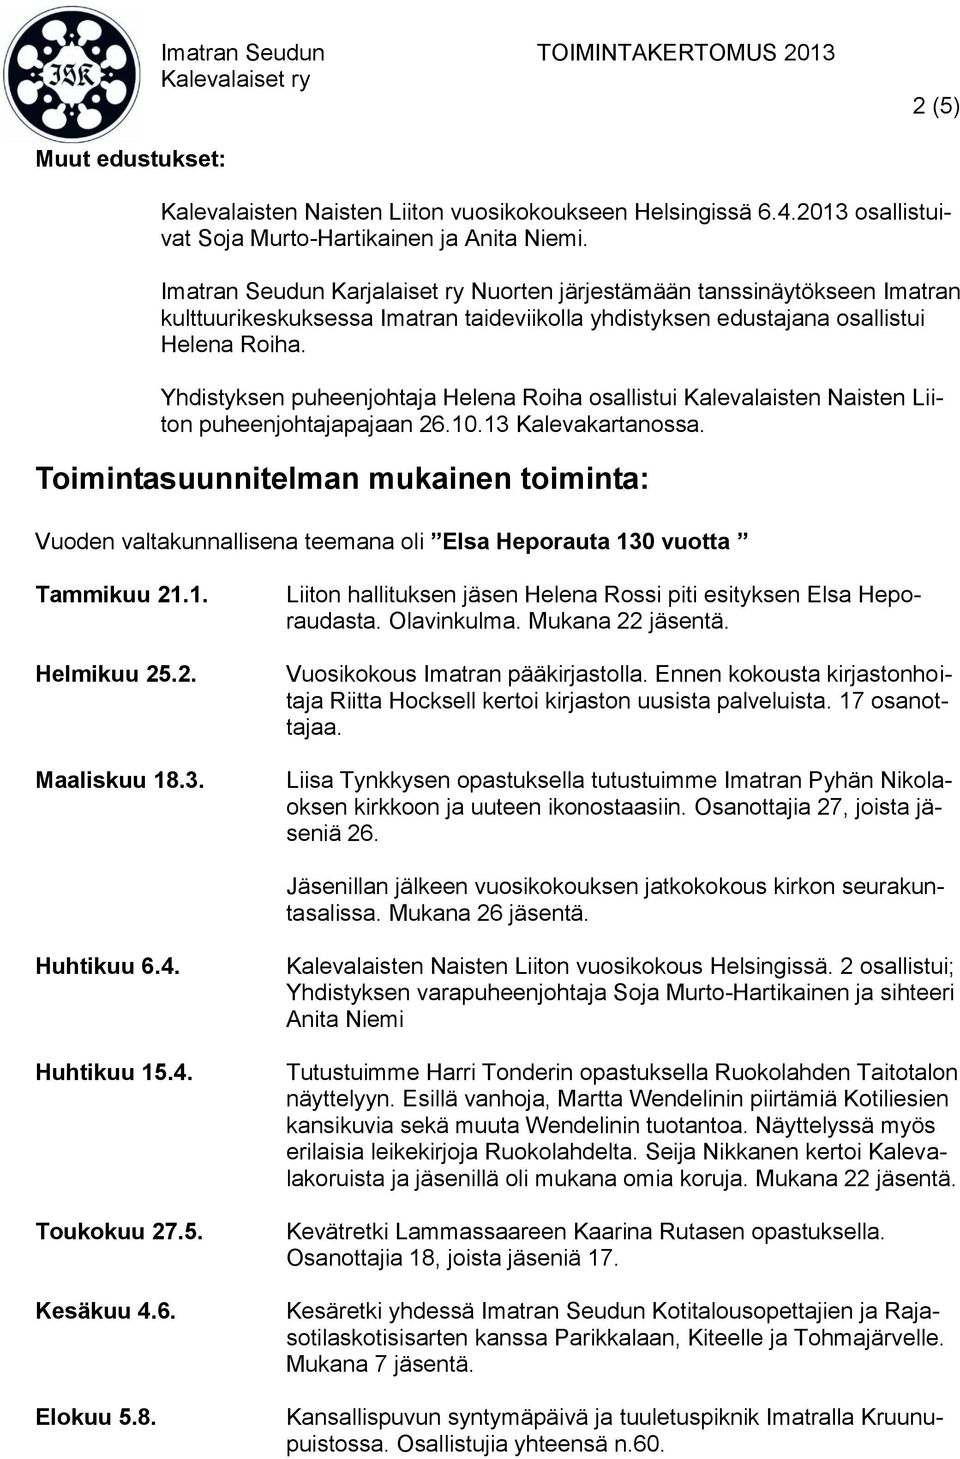 Yhdistyksen puheenjohtaja Helena Roiha osallistui Kalevalaisten Naisten Liiton puheenjohtajapajaan 26.10.13 Kalevakartanossa.